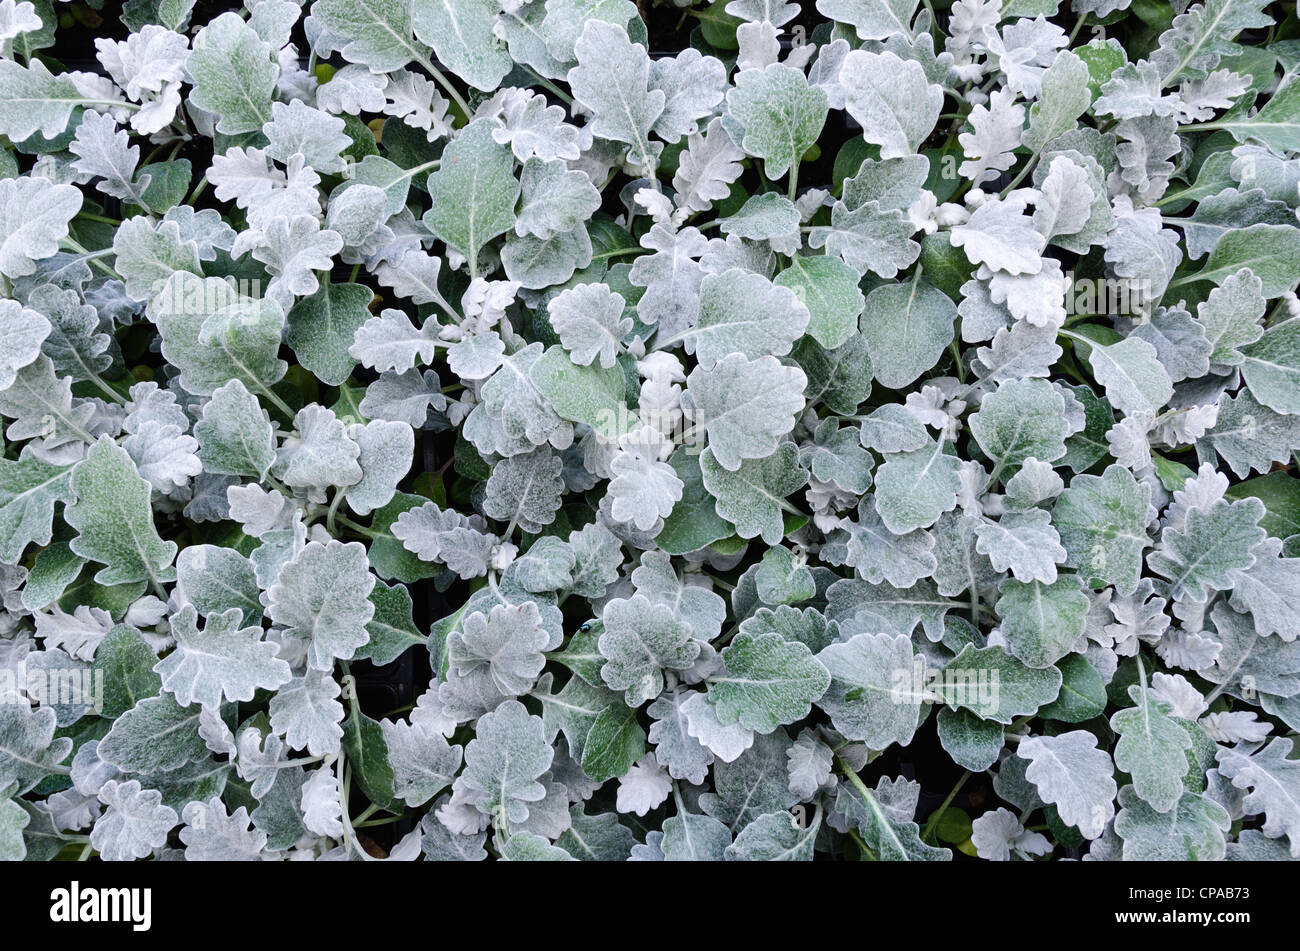 Plants of the licorice plant (Helichrysum petiolare) Stock Photo